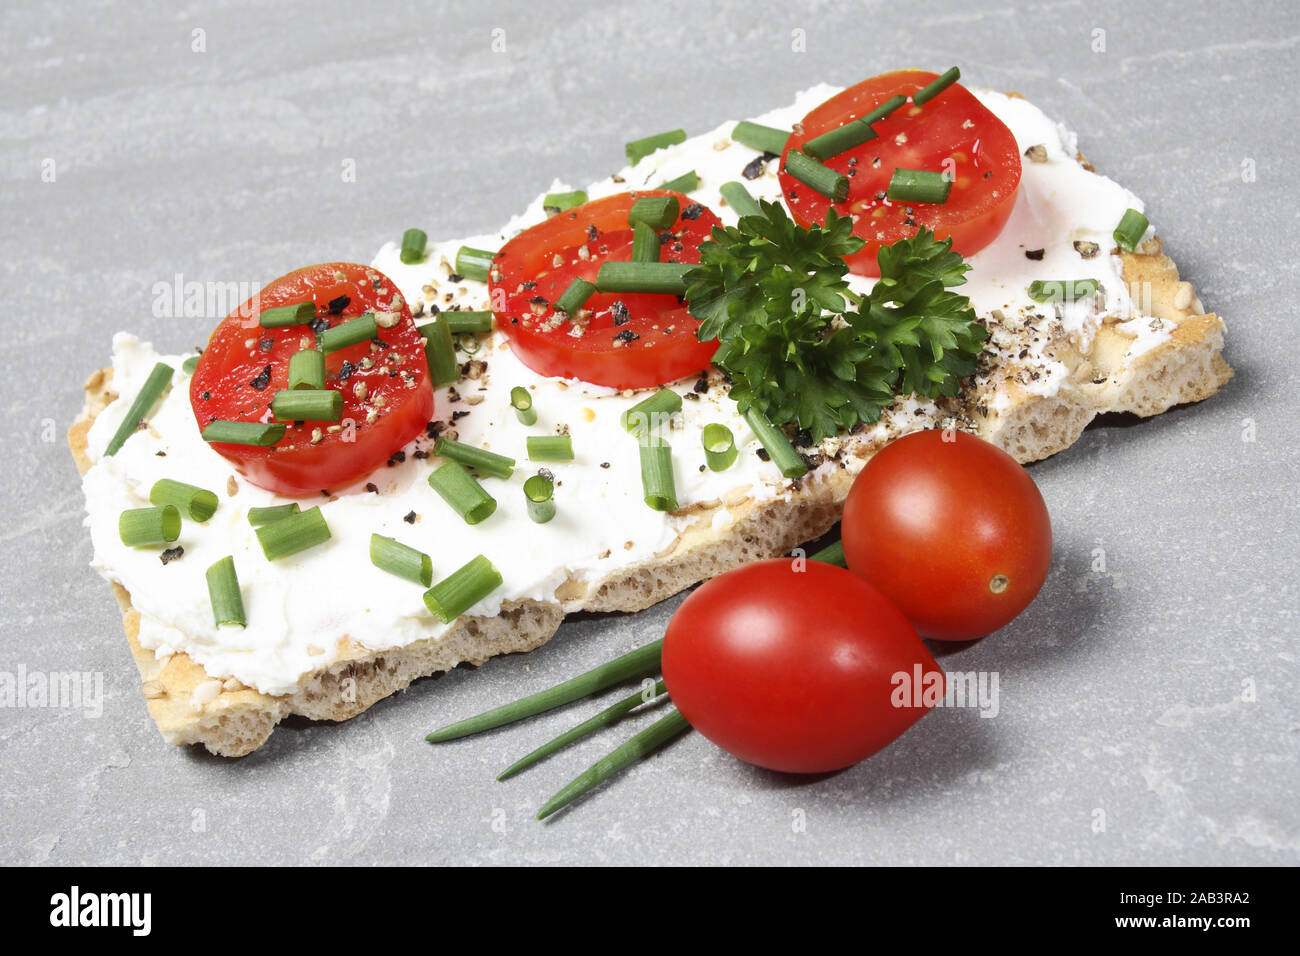 Knaeckebrot mit Frischkaese und Tomate Stock Photo - Alamy